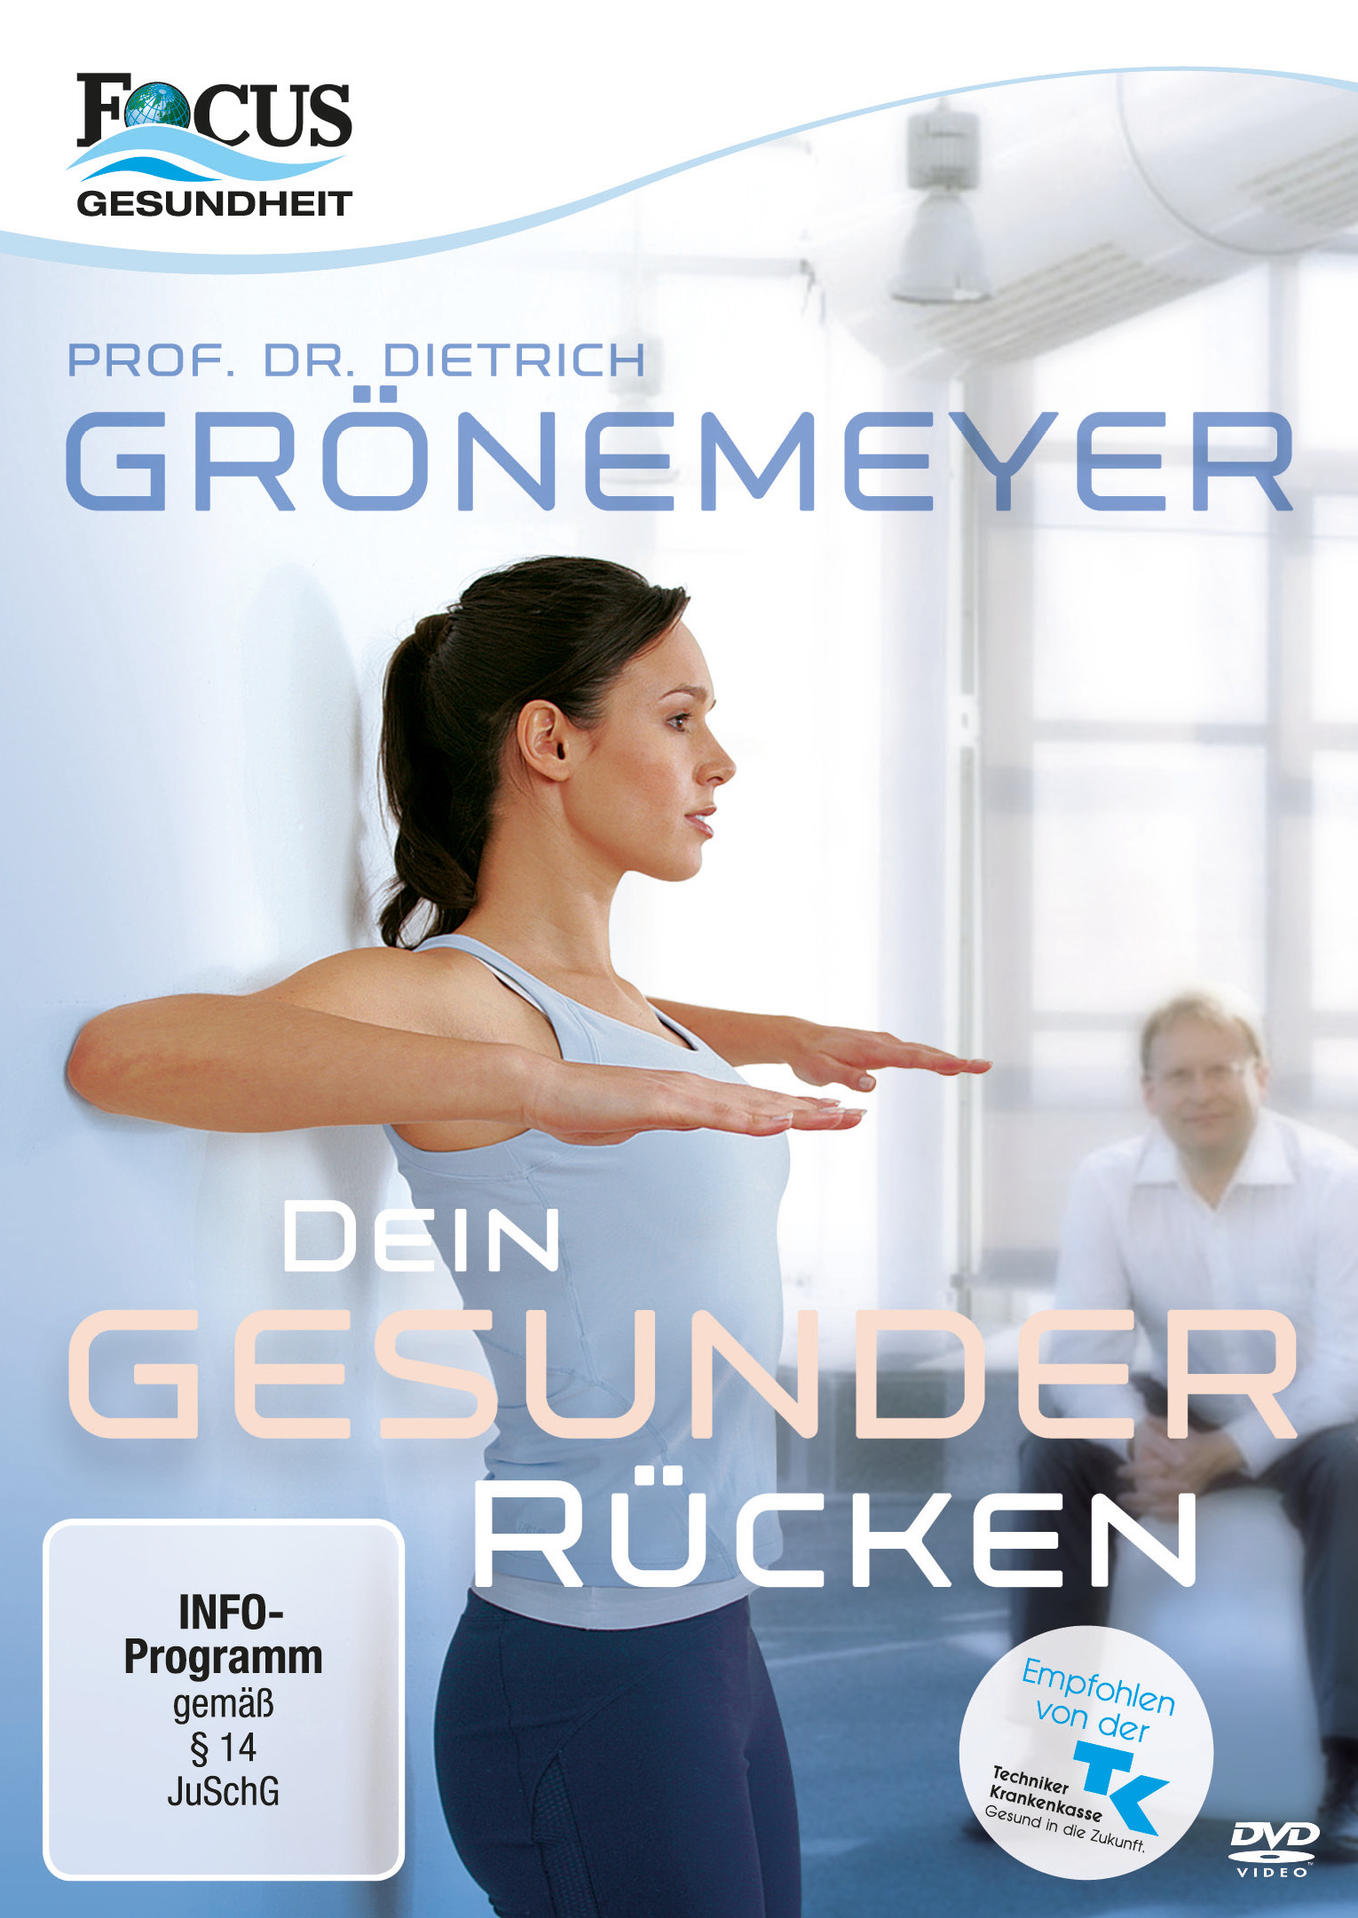 DVD Rücken Grönemeyer: Dietrich Prof. Dr. Dein gesunder